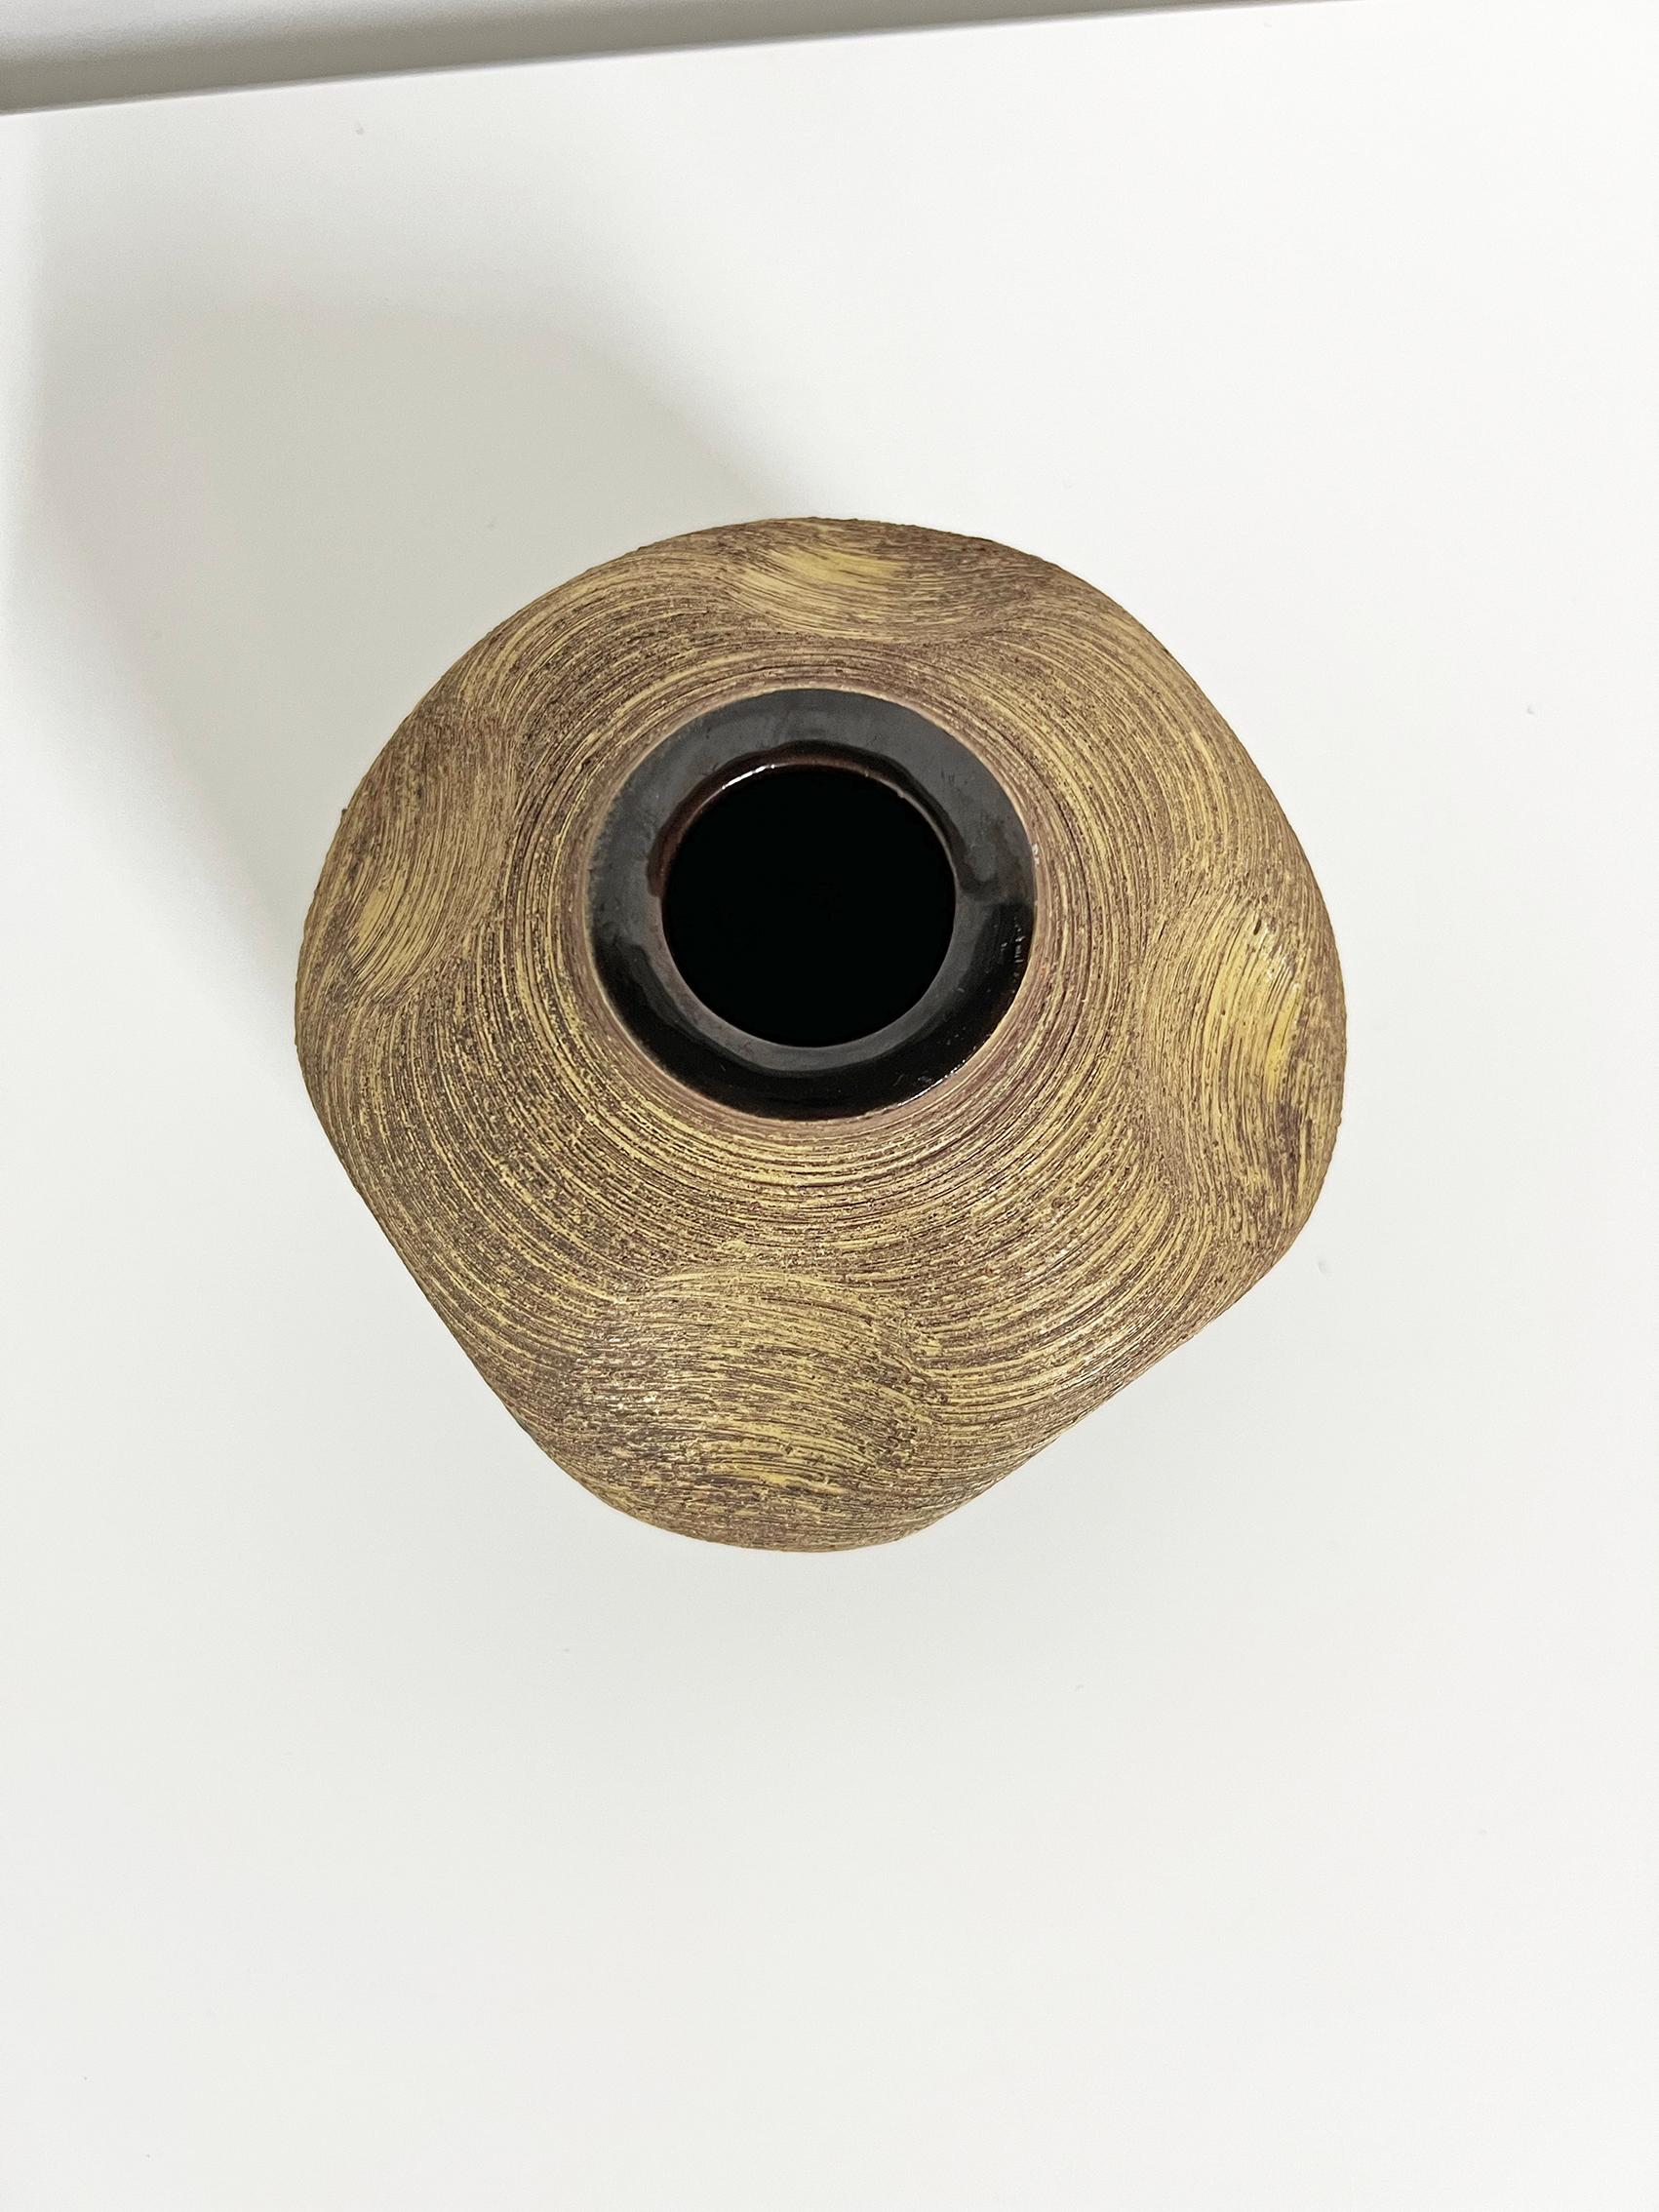 greta runeborg vase